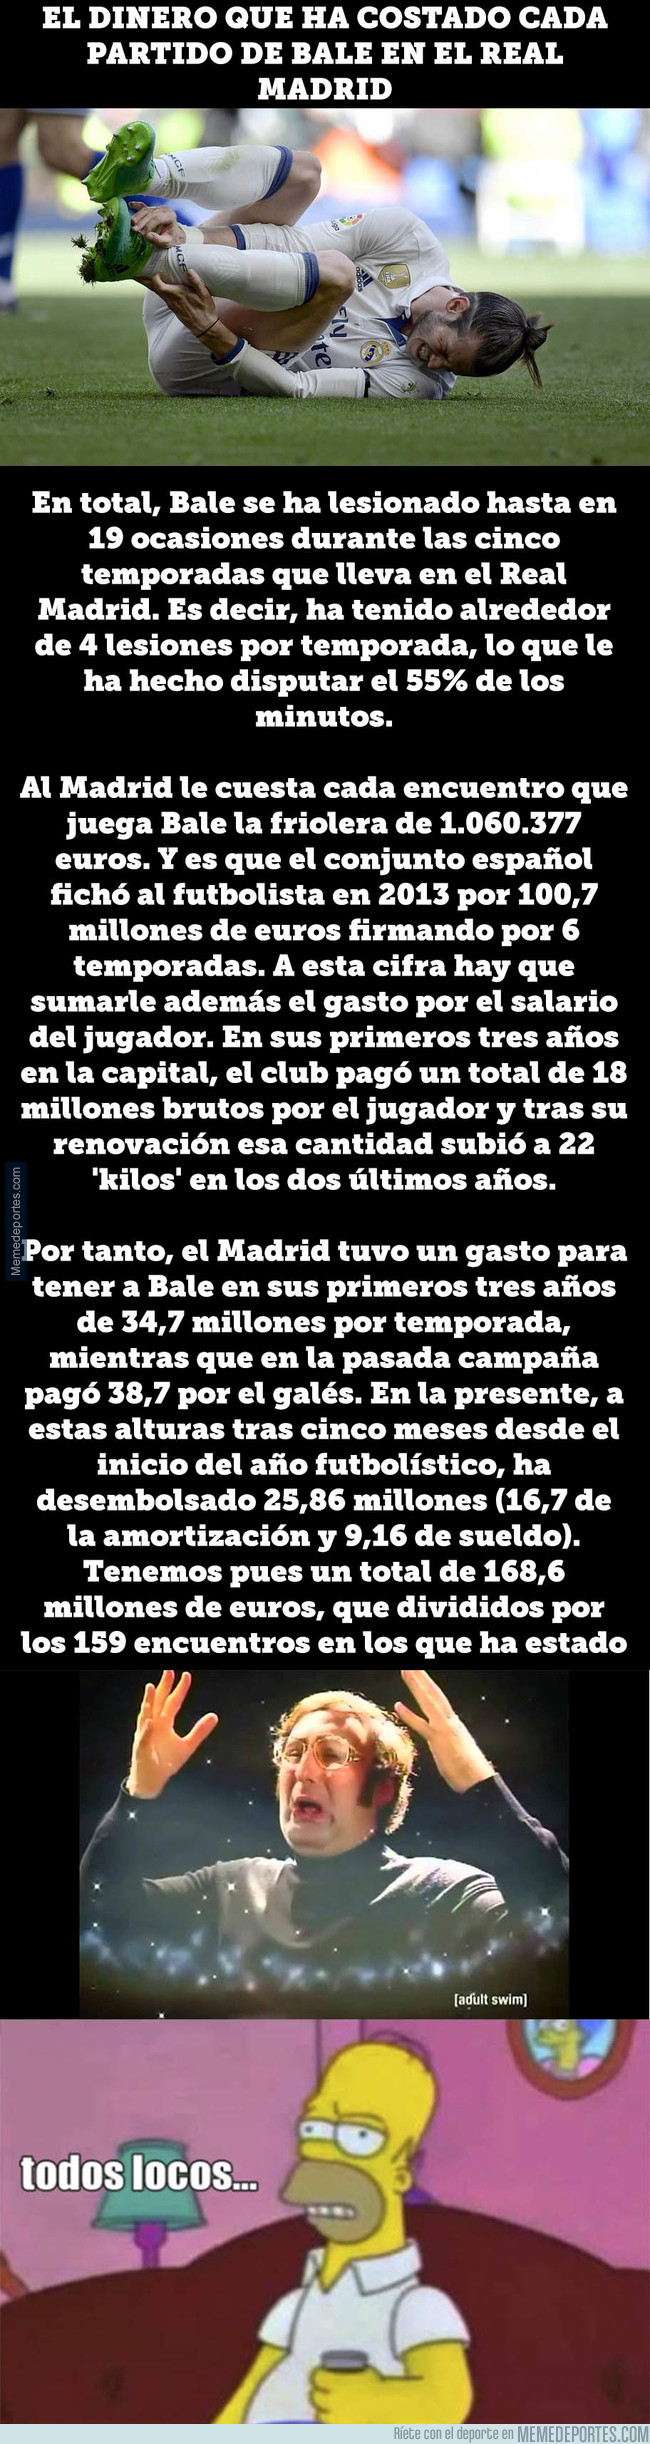 1007271 - Esto es lo que le cuesta al Real Madrid cada partido de Bale